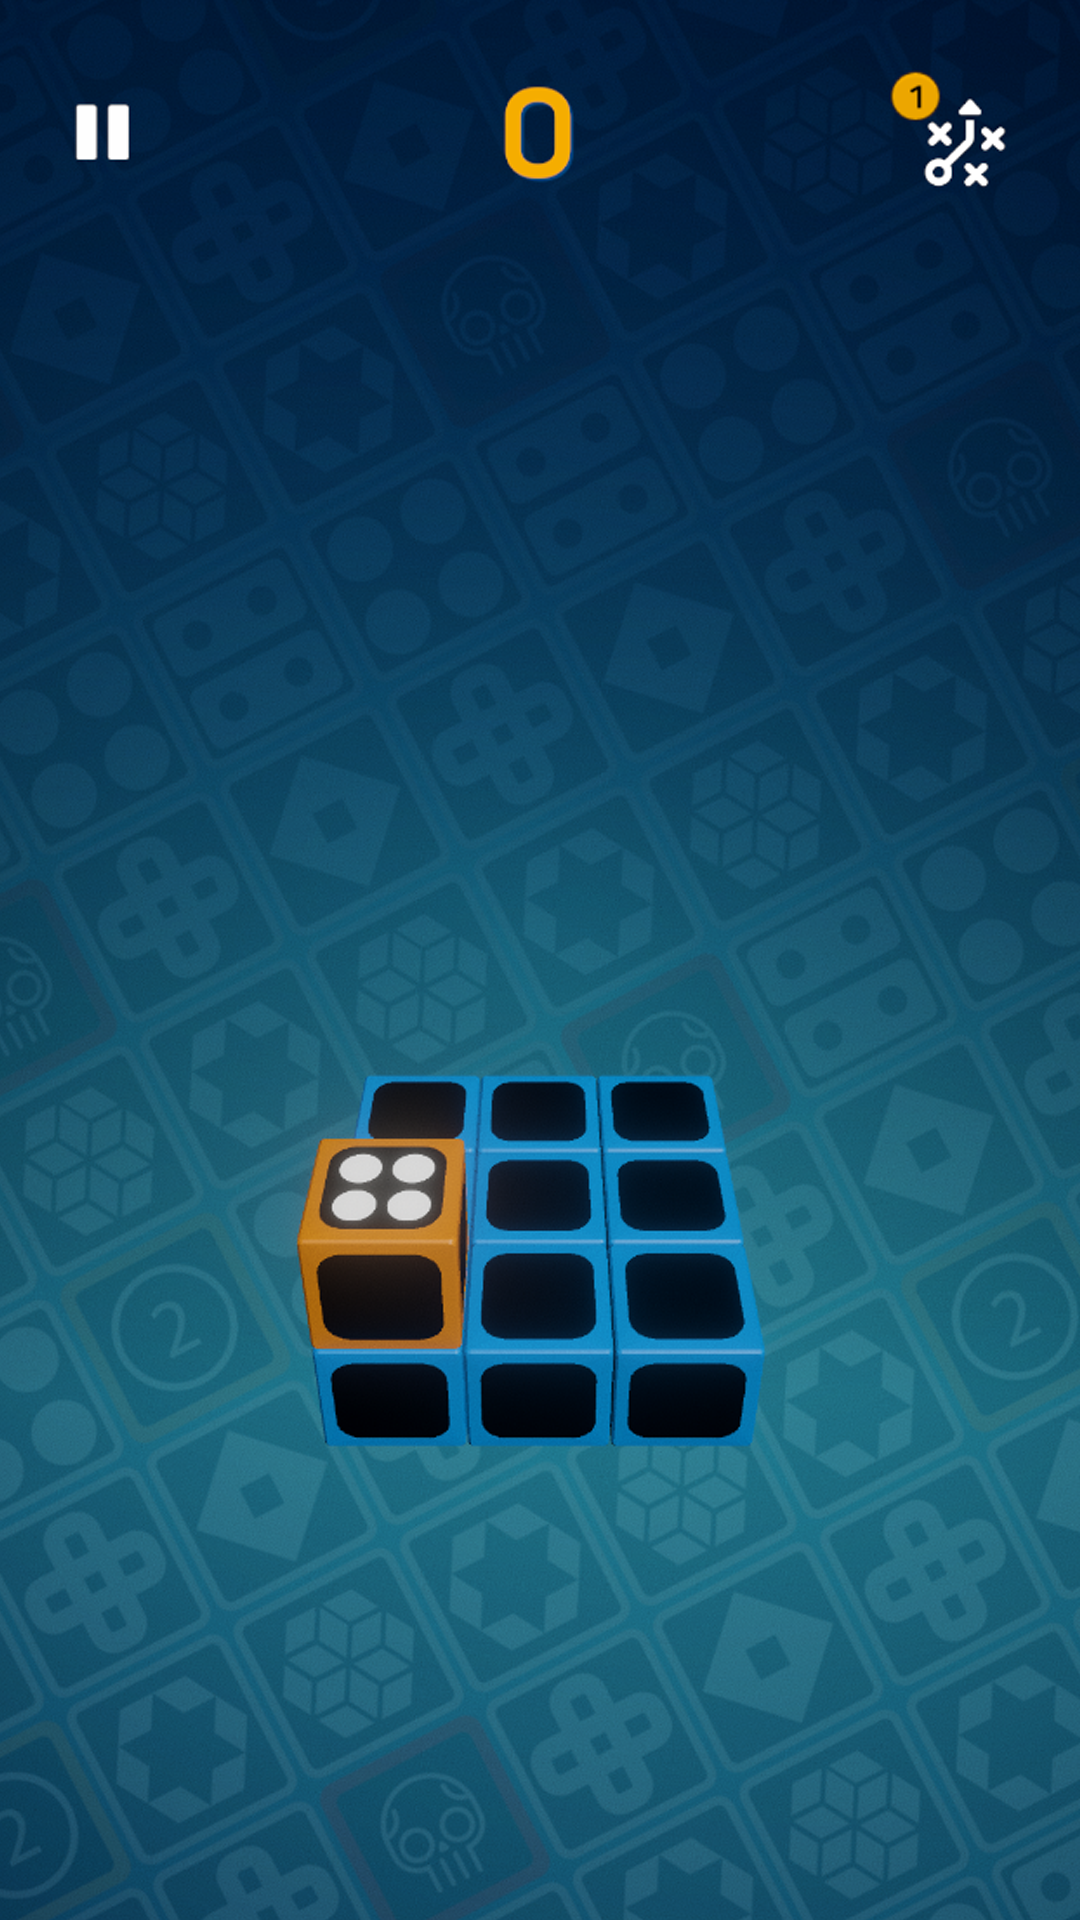 Cubeirus - A Cube Game ภาพหน้าจอเกม